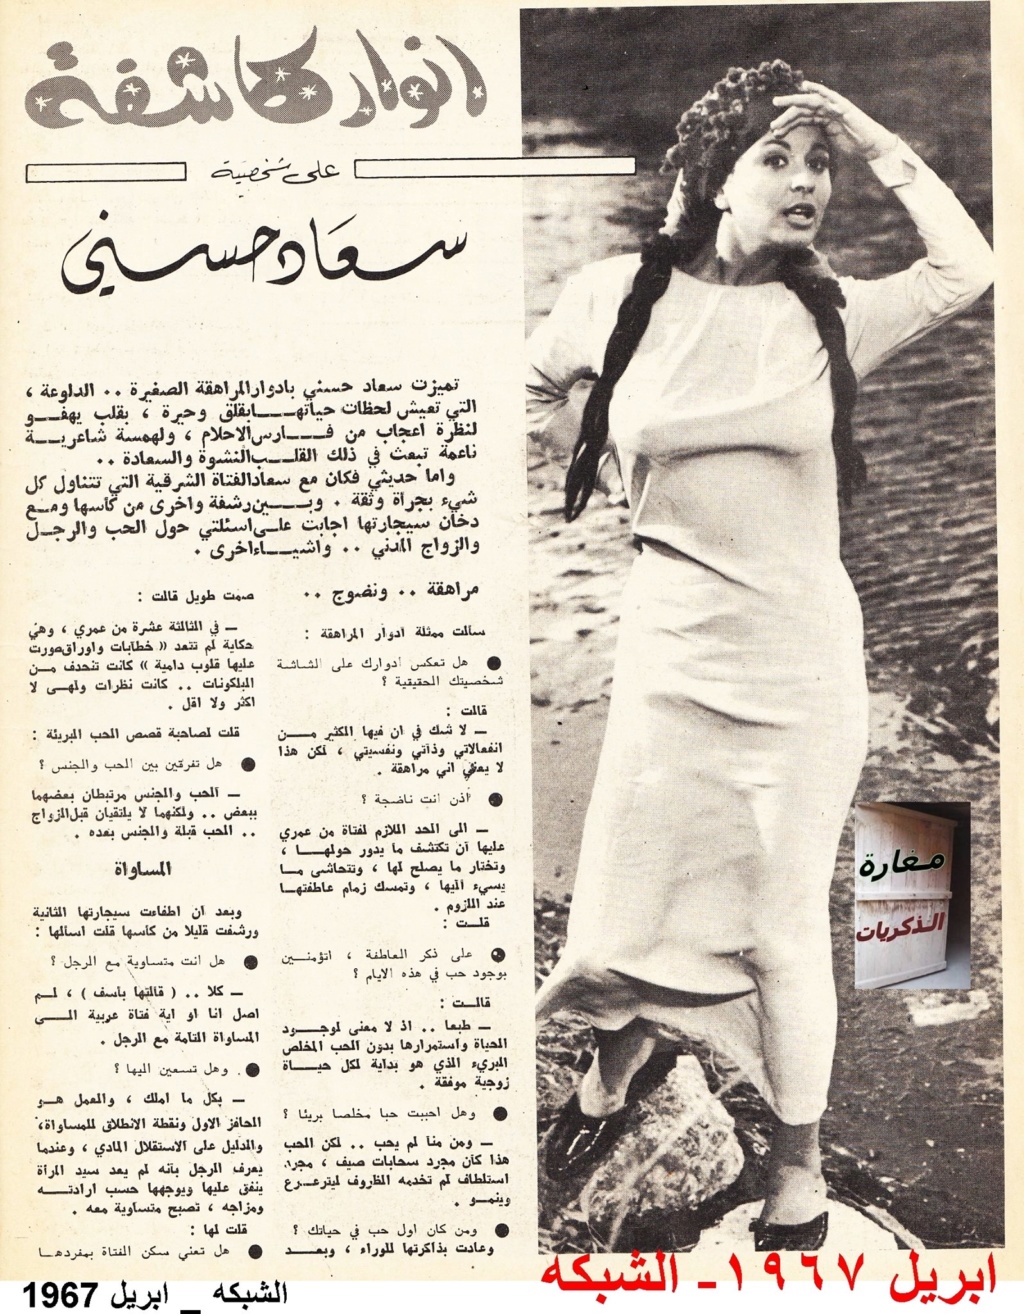 حوار صحفي : انوار كاشفة على شخصية سعاد حسني 1967 م 1331